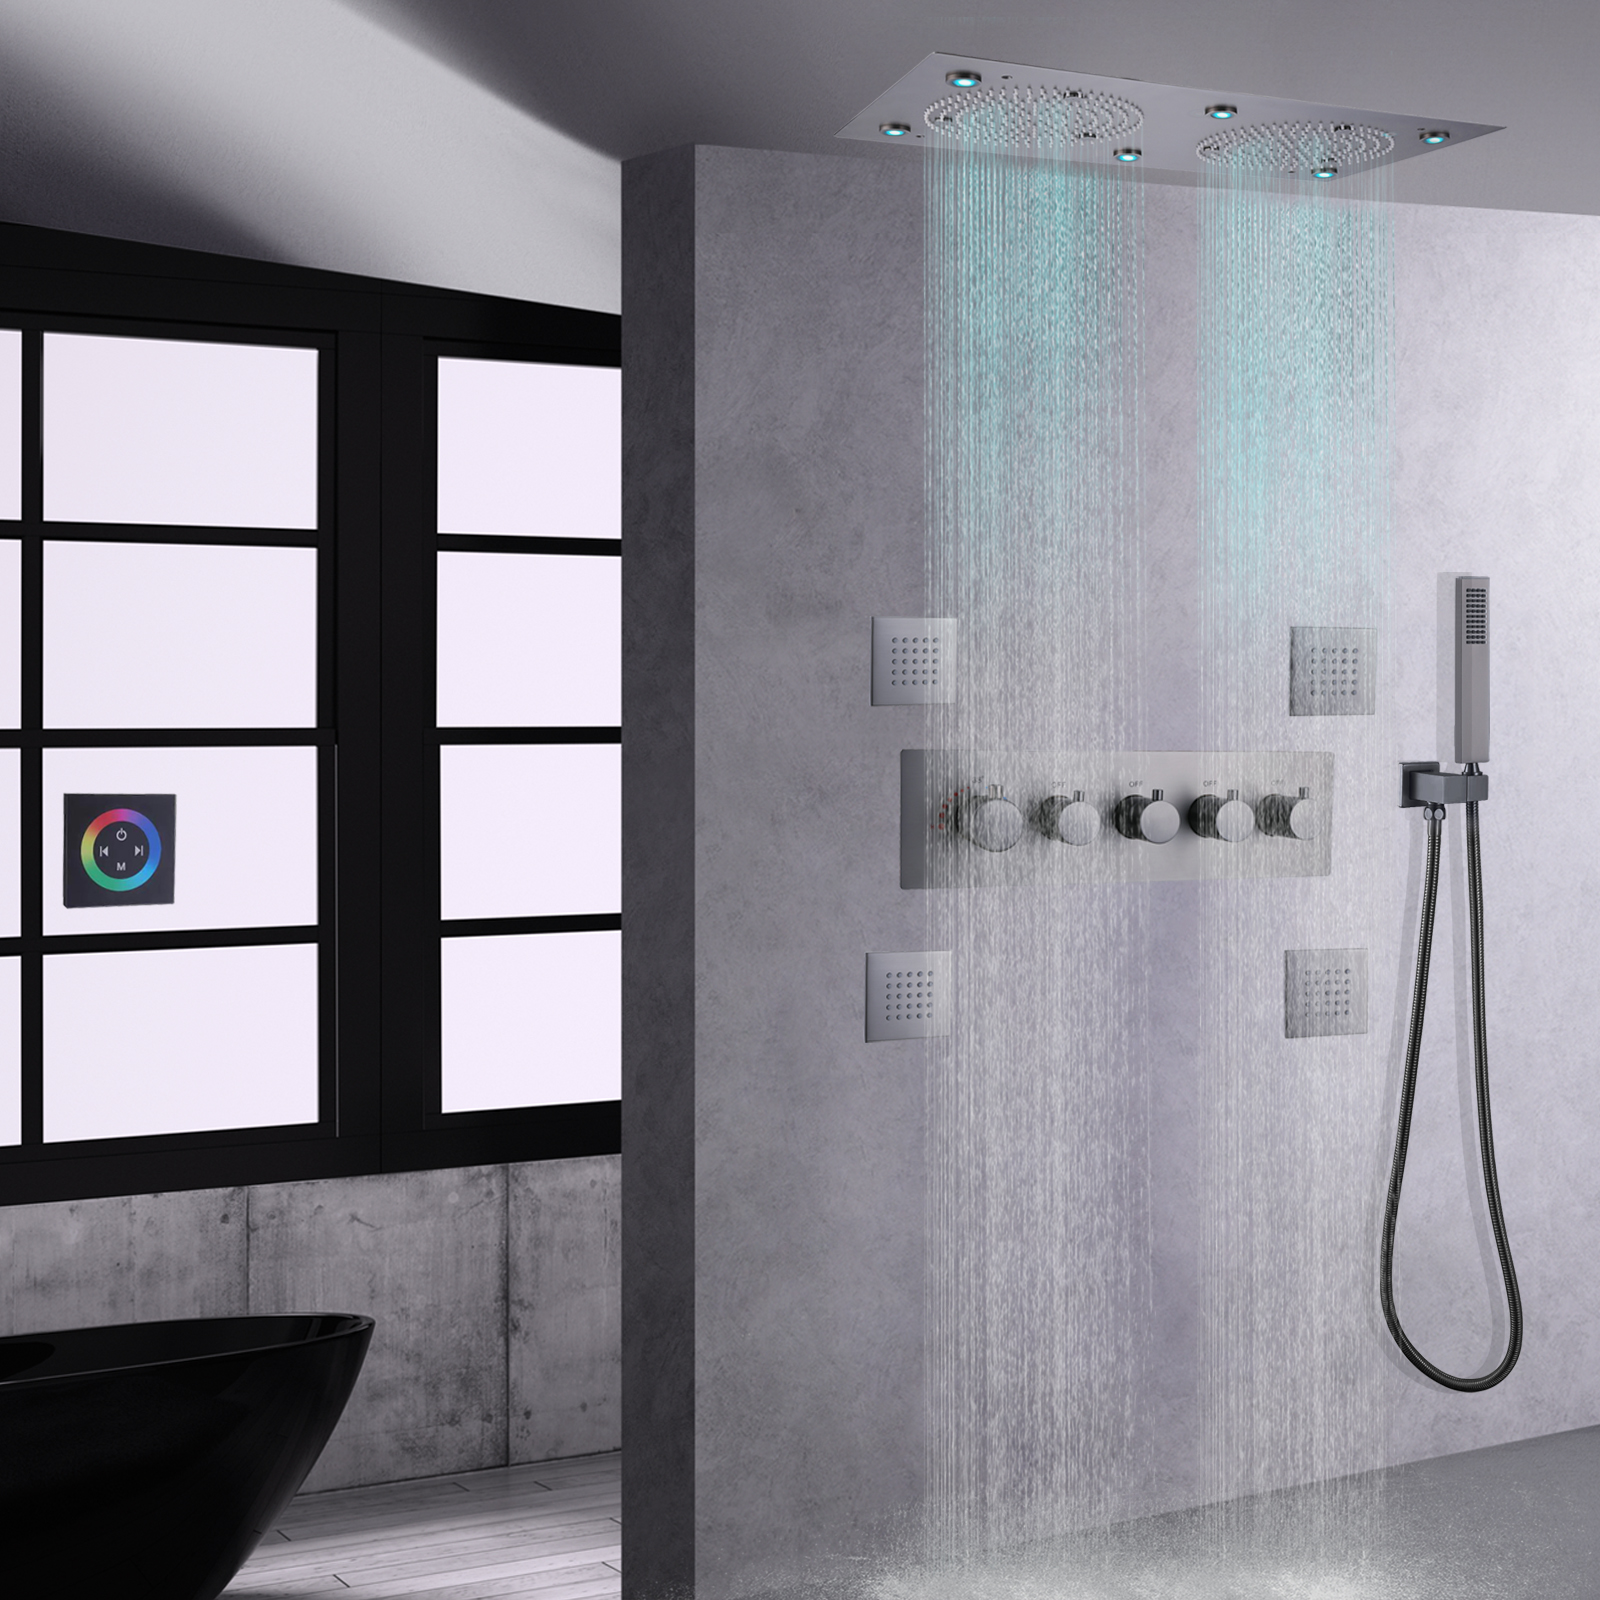 Arma cinza sistema de chuveiro 7 colorido led banheiro banho termostático chuva névoa douche chuveiro misturador spa